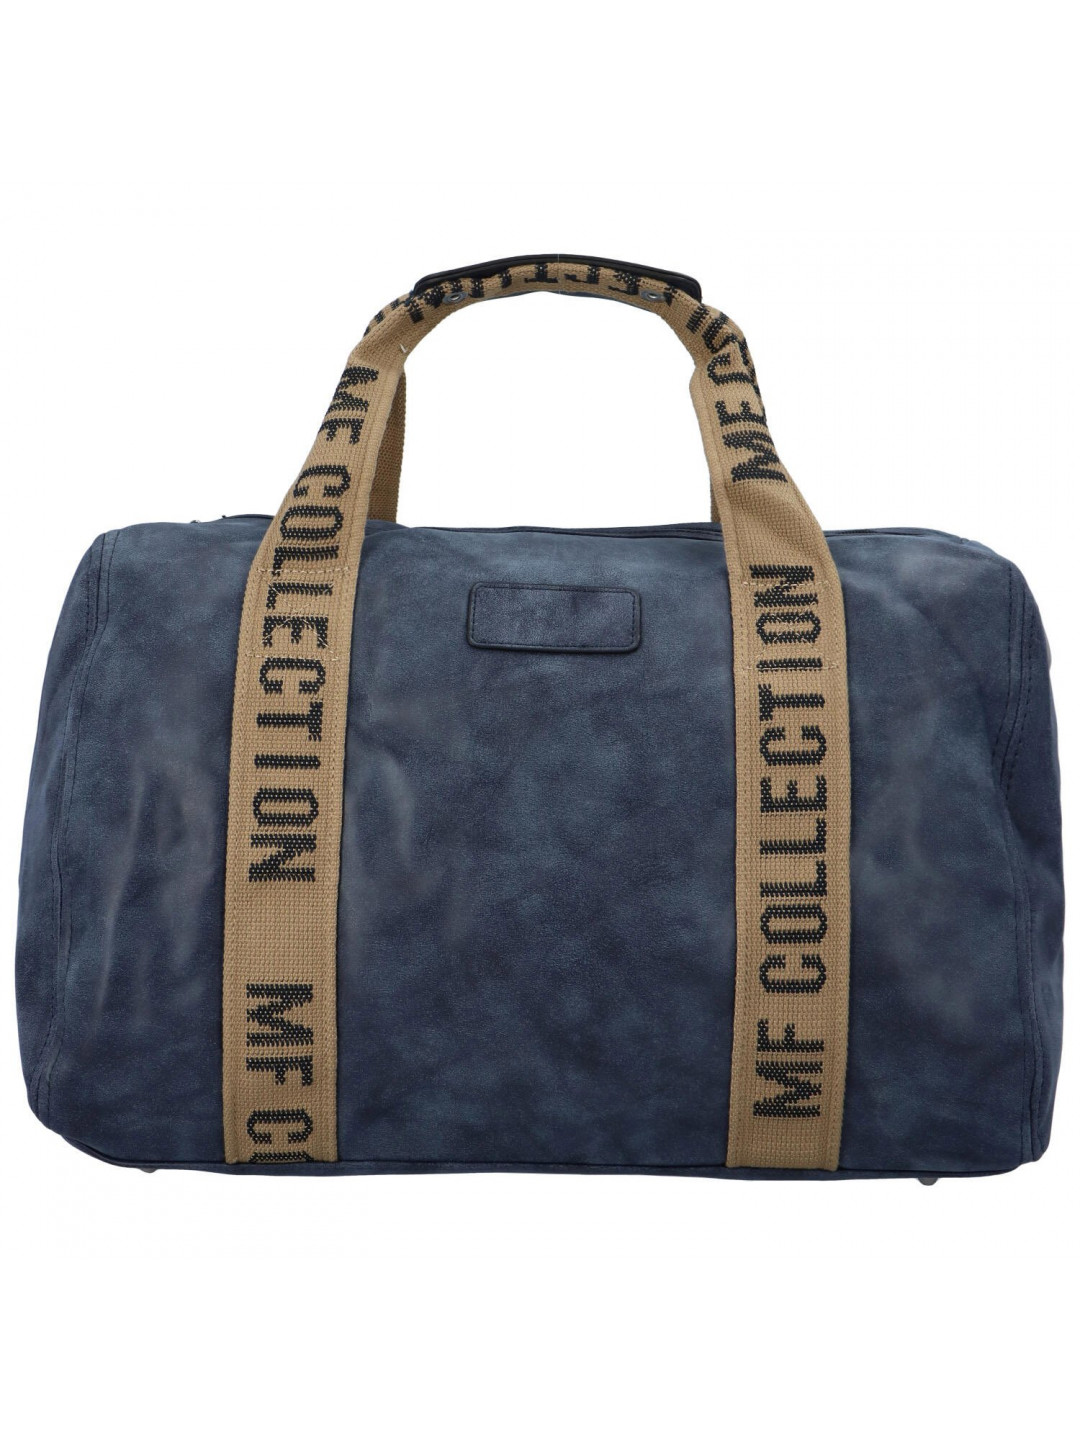 Cestovní dámská koženková kabelka Gita tmavě modrá